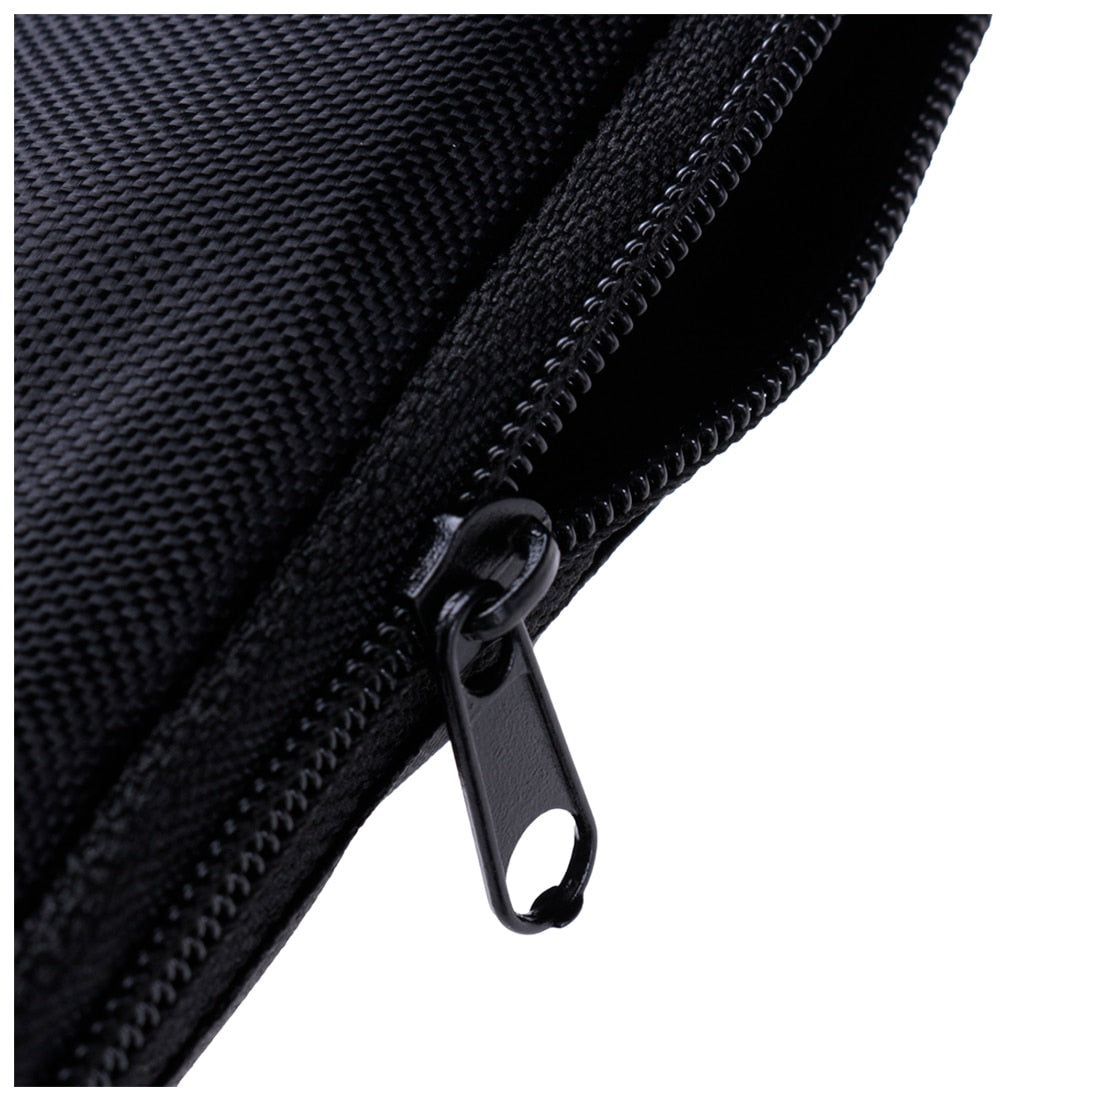 Gate Check Pram Portable Travel Bag Umbrella Stroller/Pushchair/Buggy Bag Cover Style:Umbrella Stroller Style - ebowsos